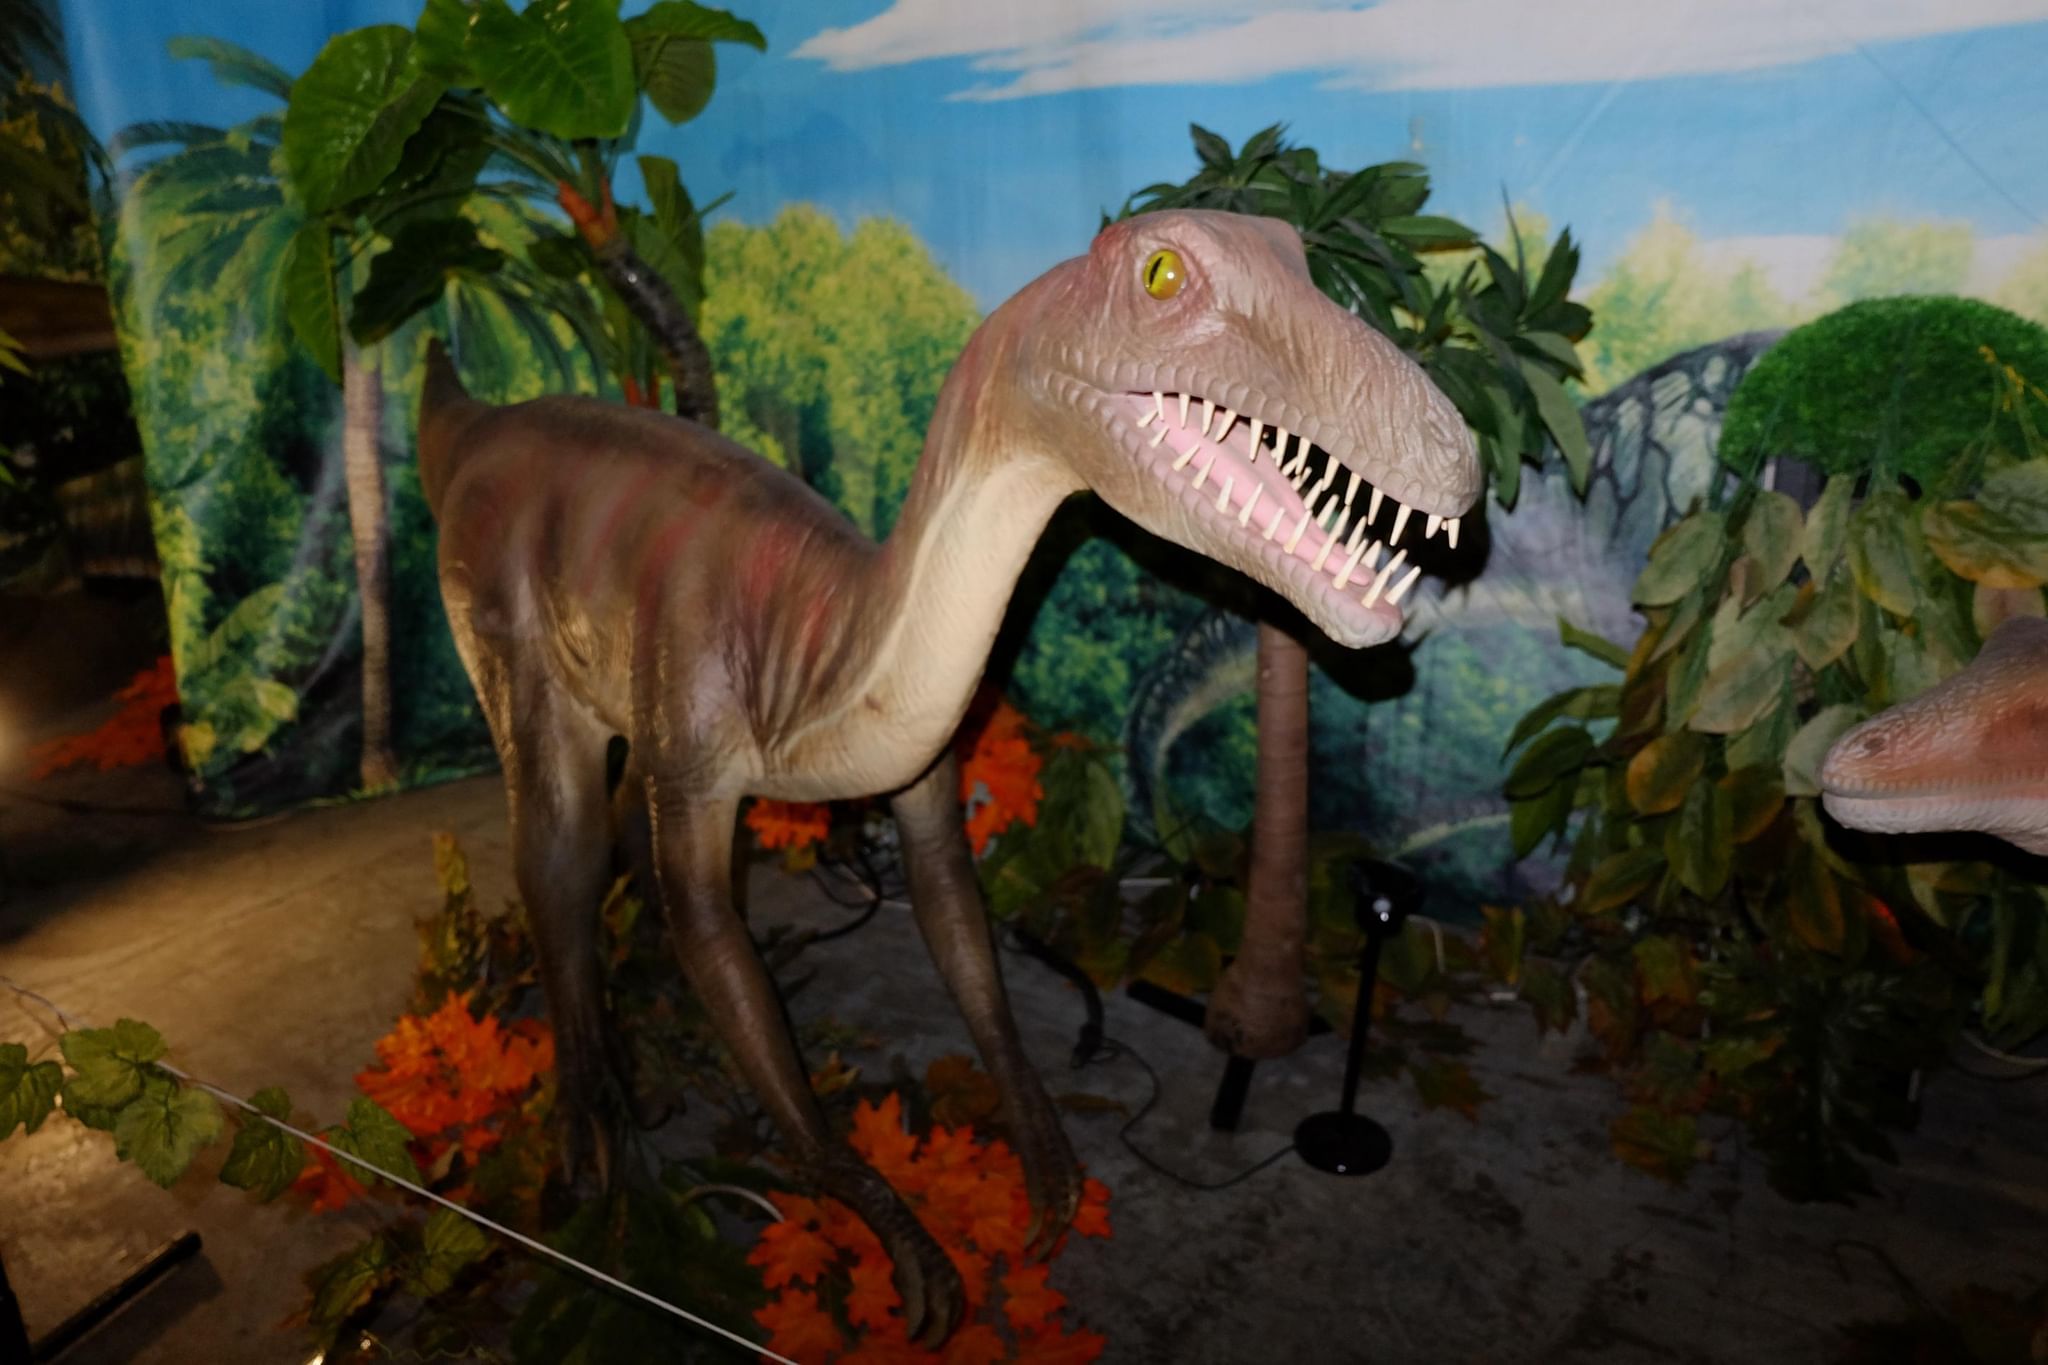 планета динозавров в санкт петербурге